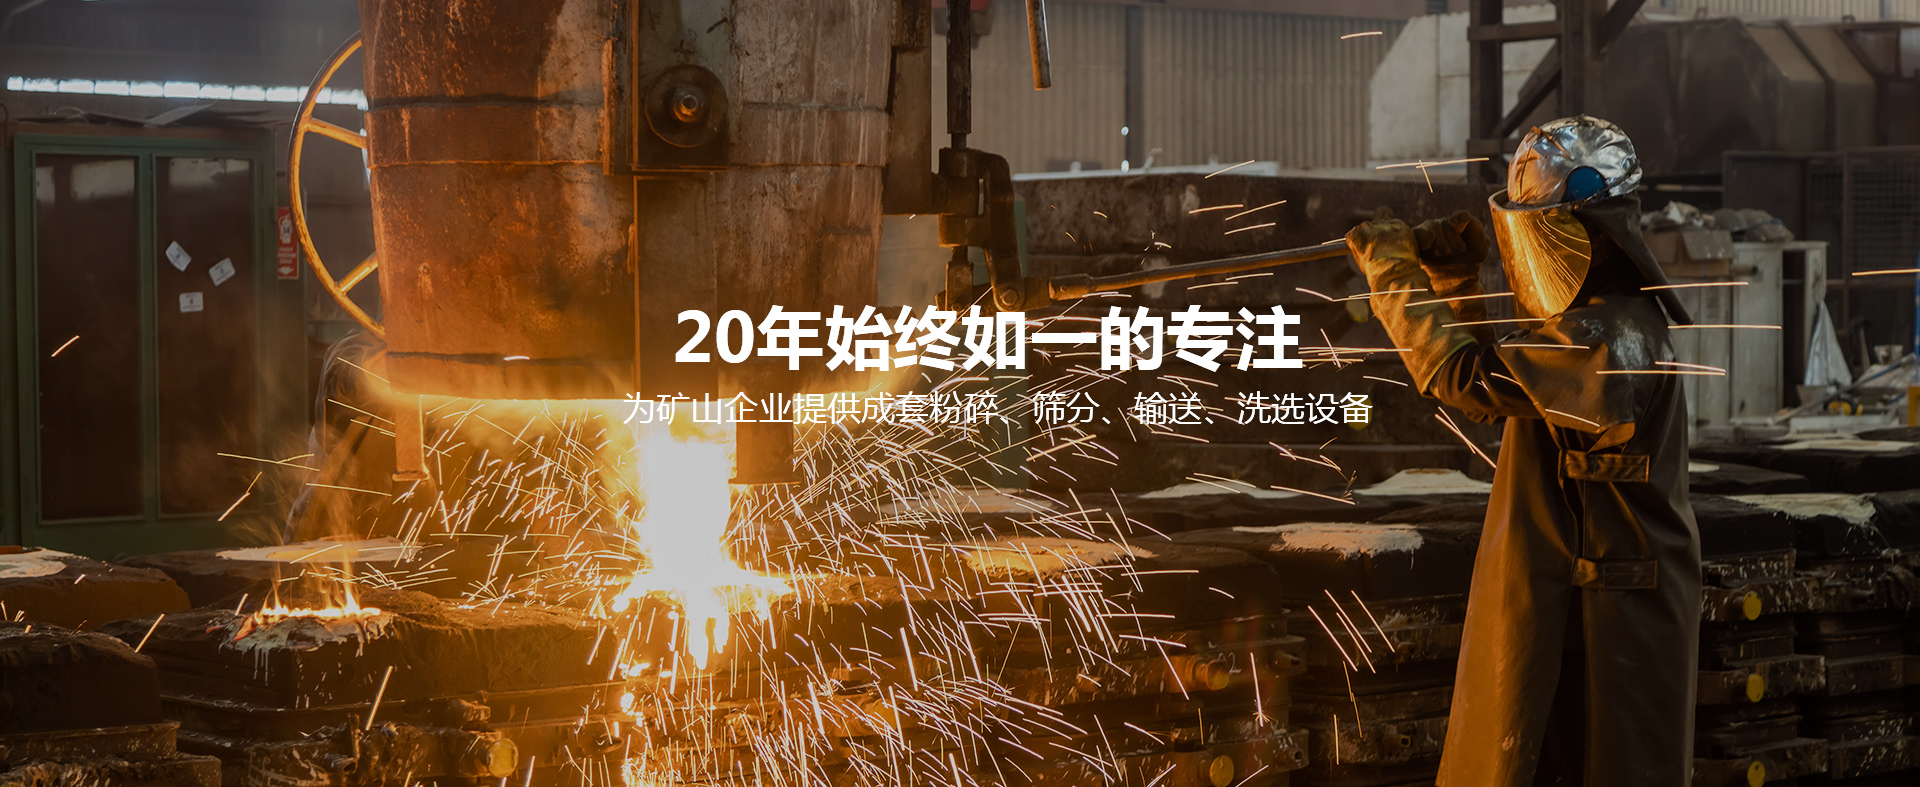 Zhejiang Wujing Machinery Co., Ltd.